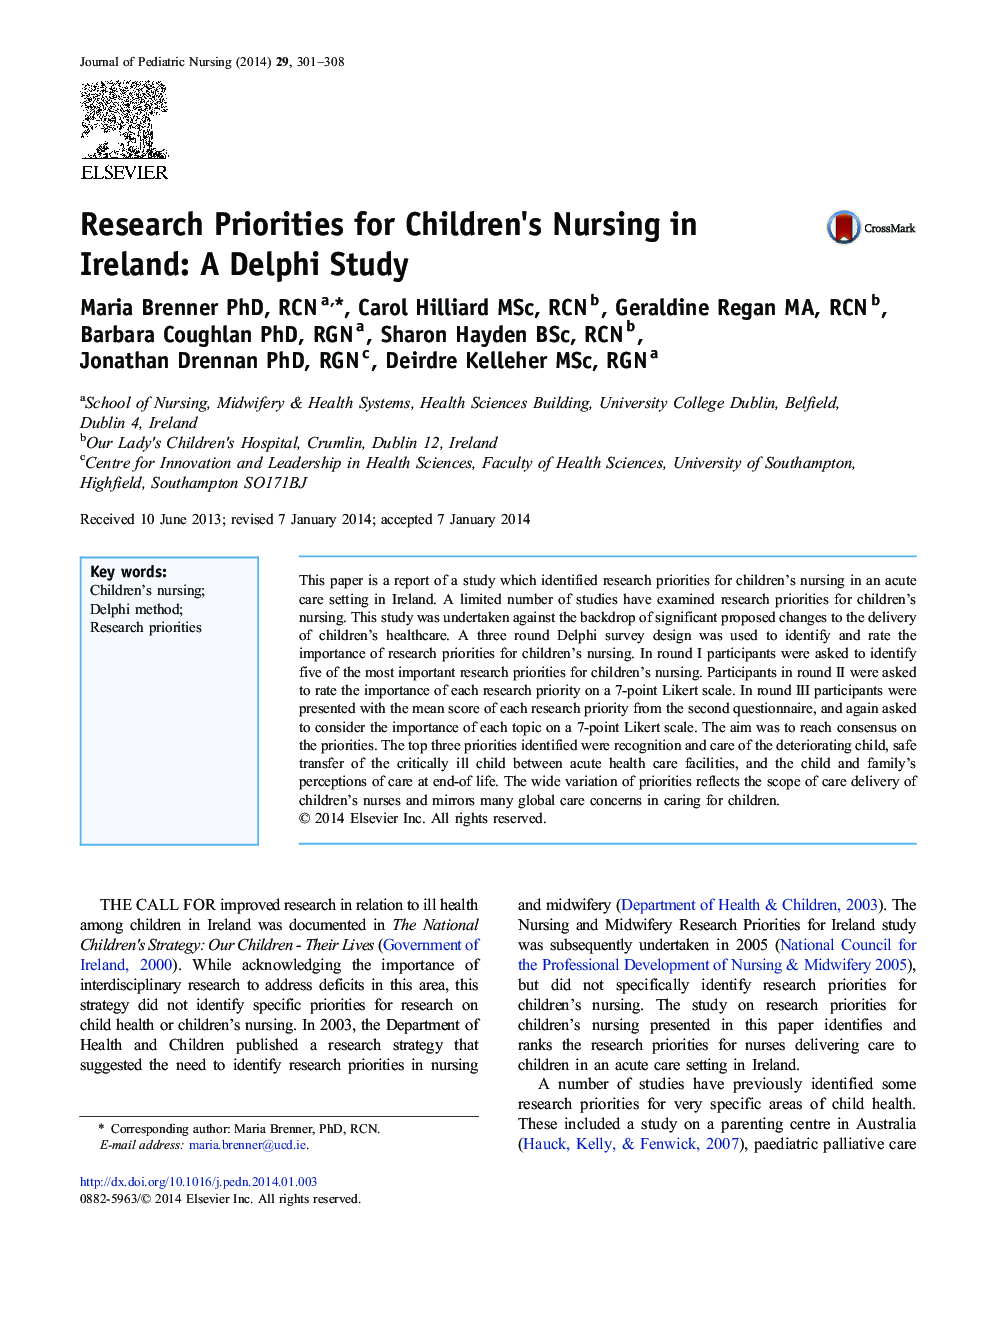 اولویت های تحقیق برای پرستاری کودکان در ایرلند: مطالعه دلفی